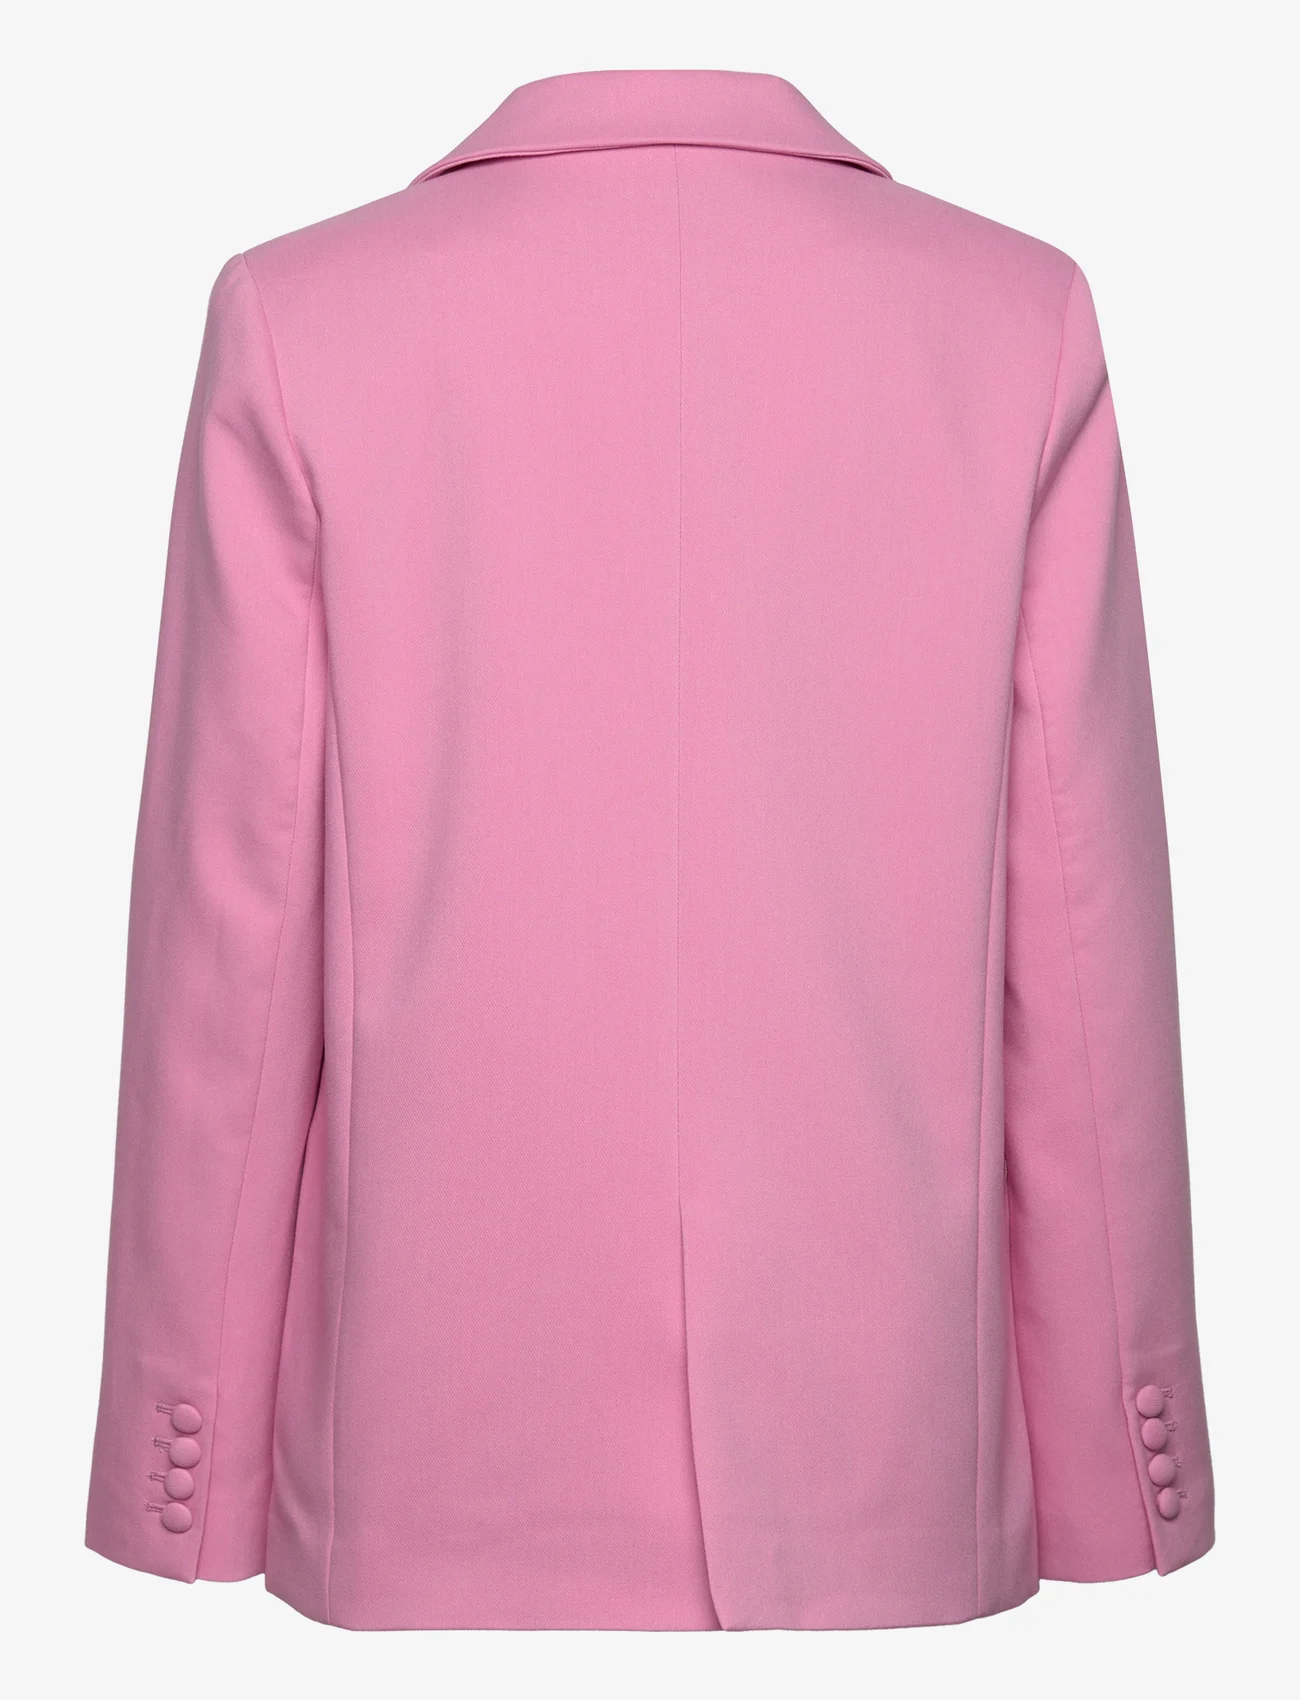 MAUD - Elvira Blazer - ballīšu apģērbs par outlet cenām - pink - 1